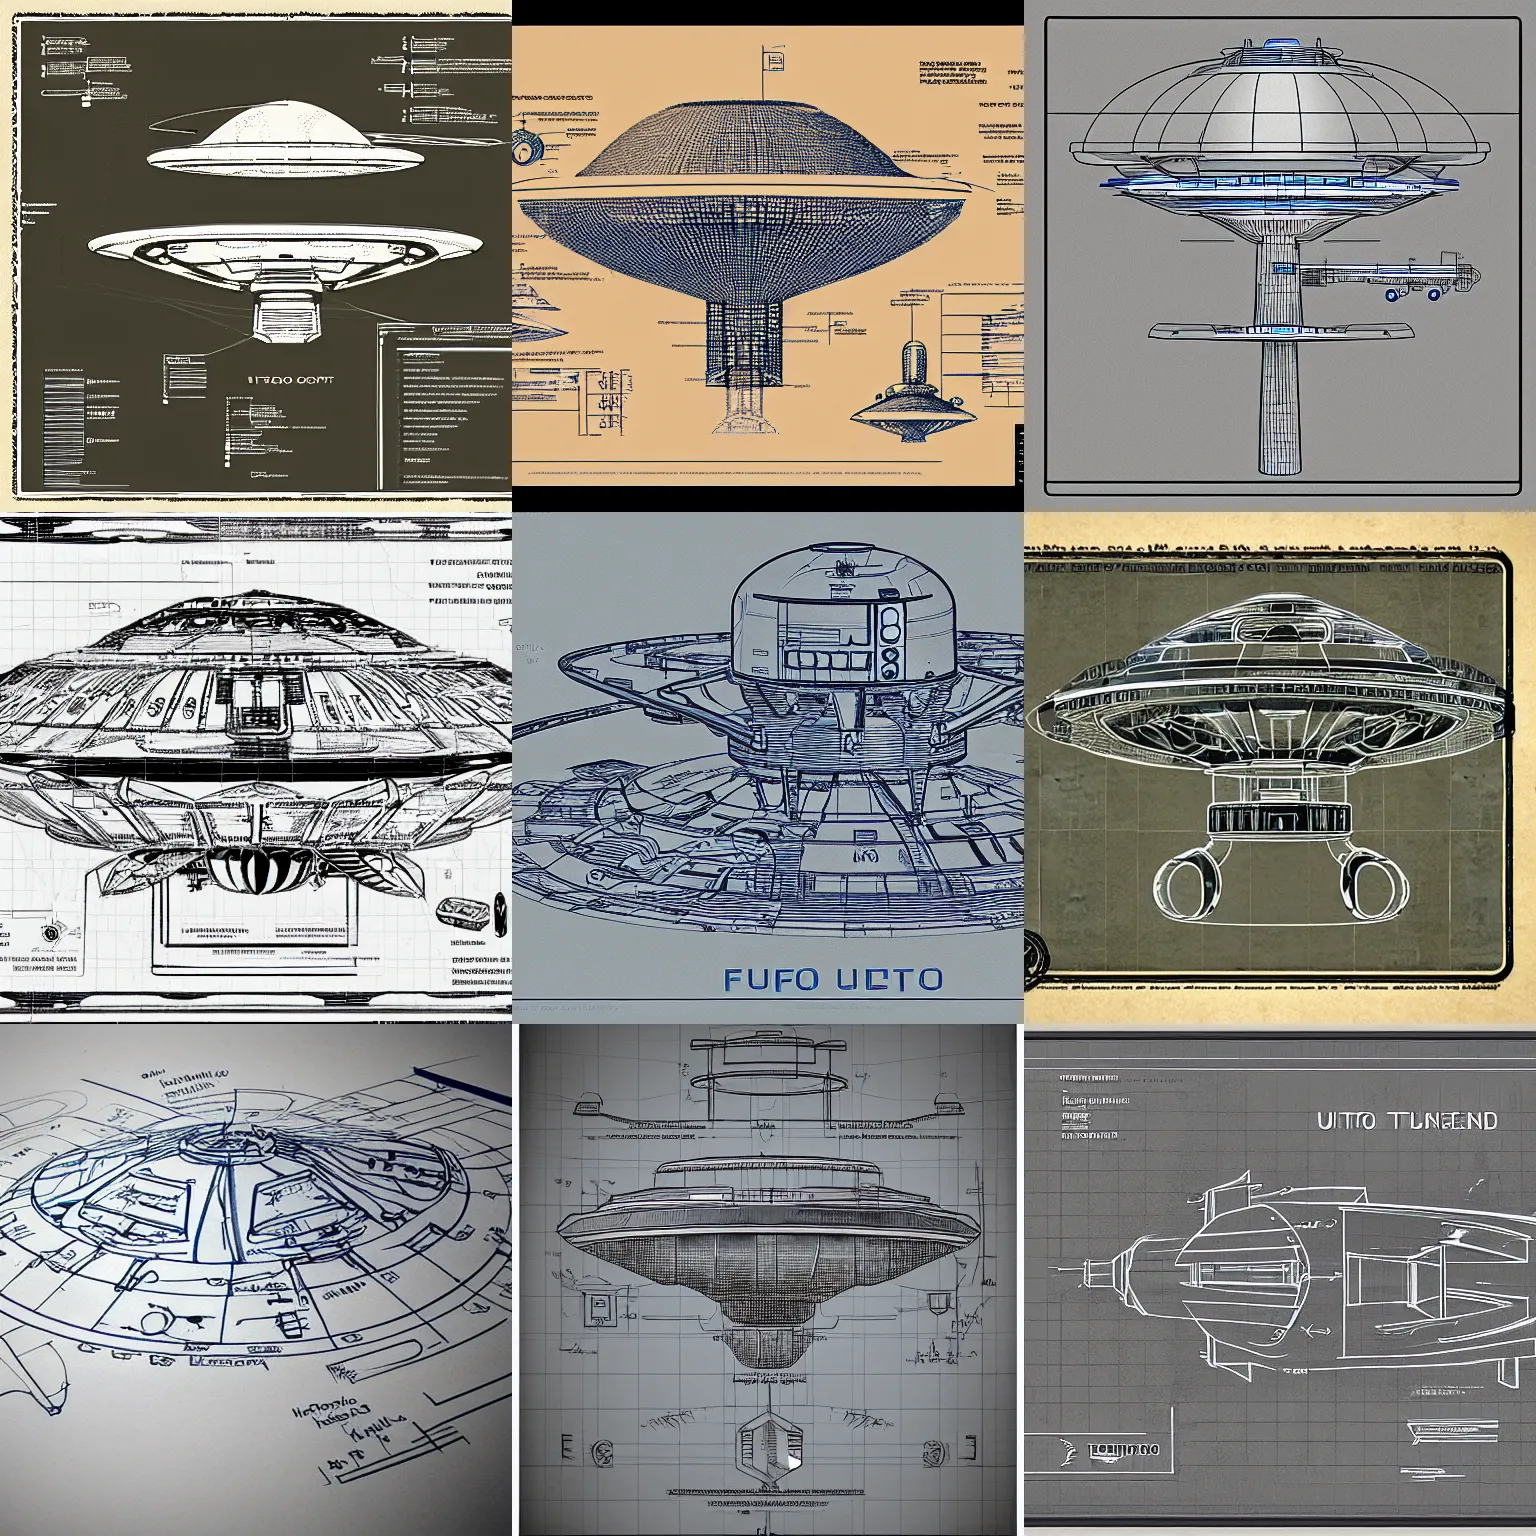 Prompt: UFO blueprint, concept